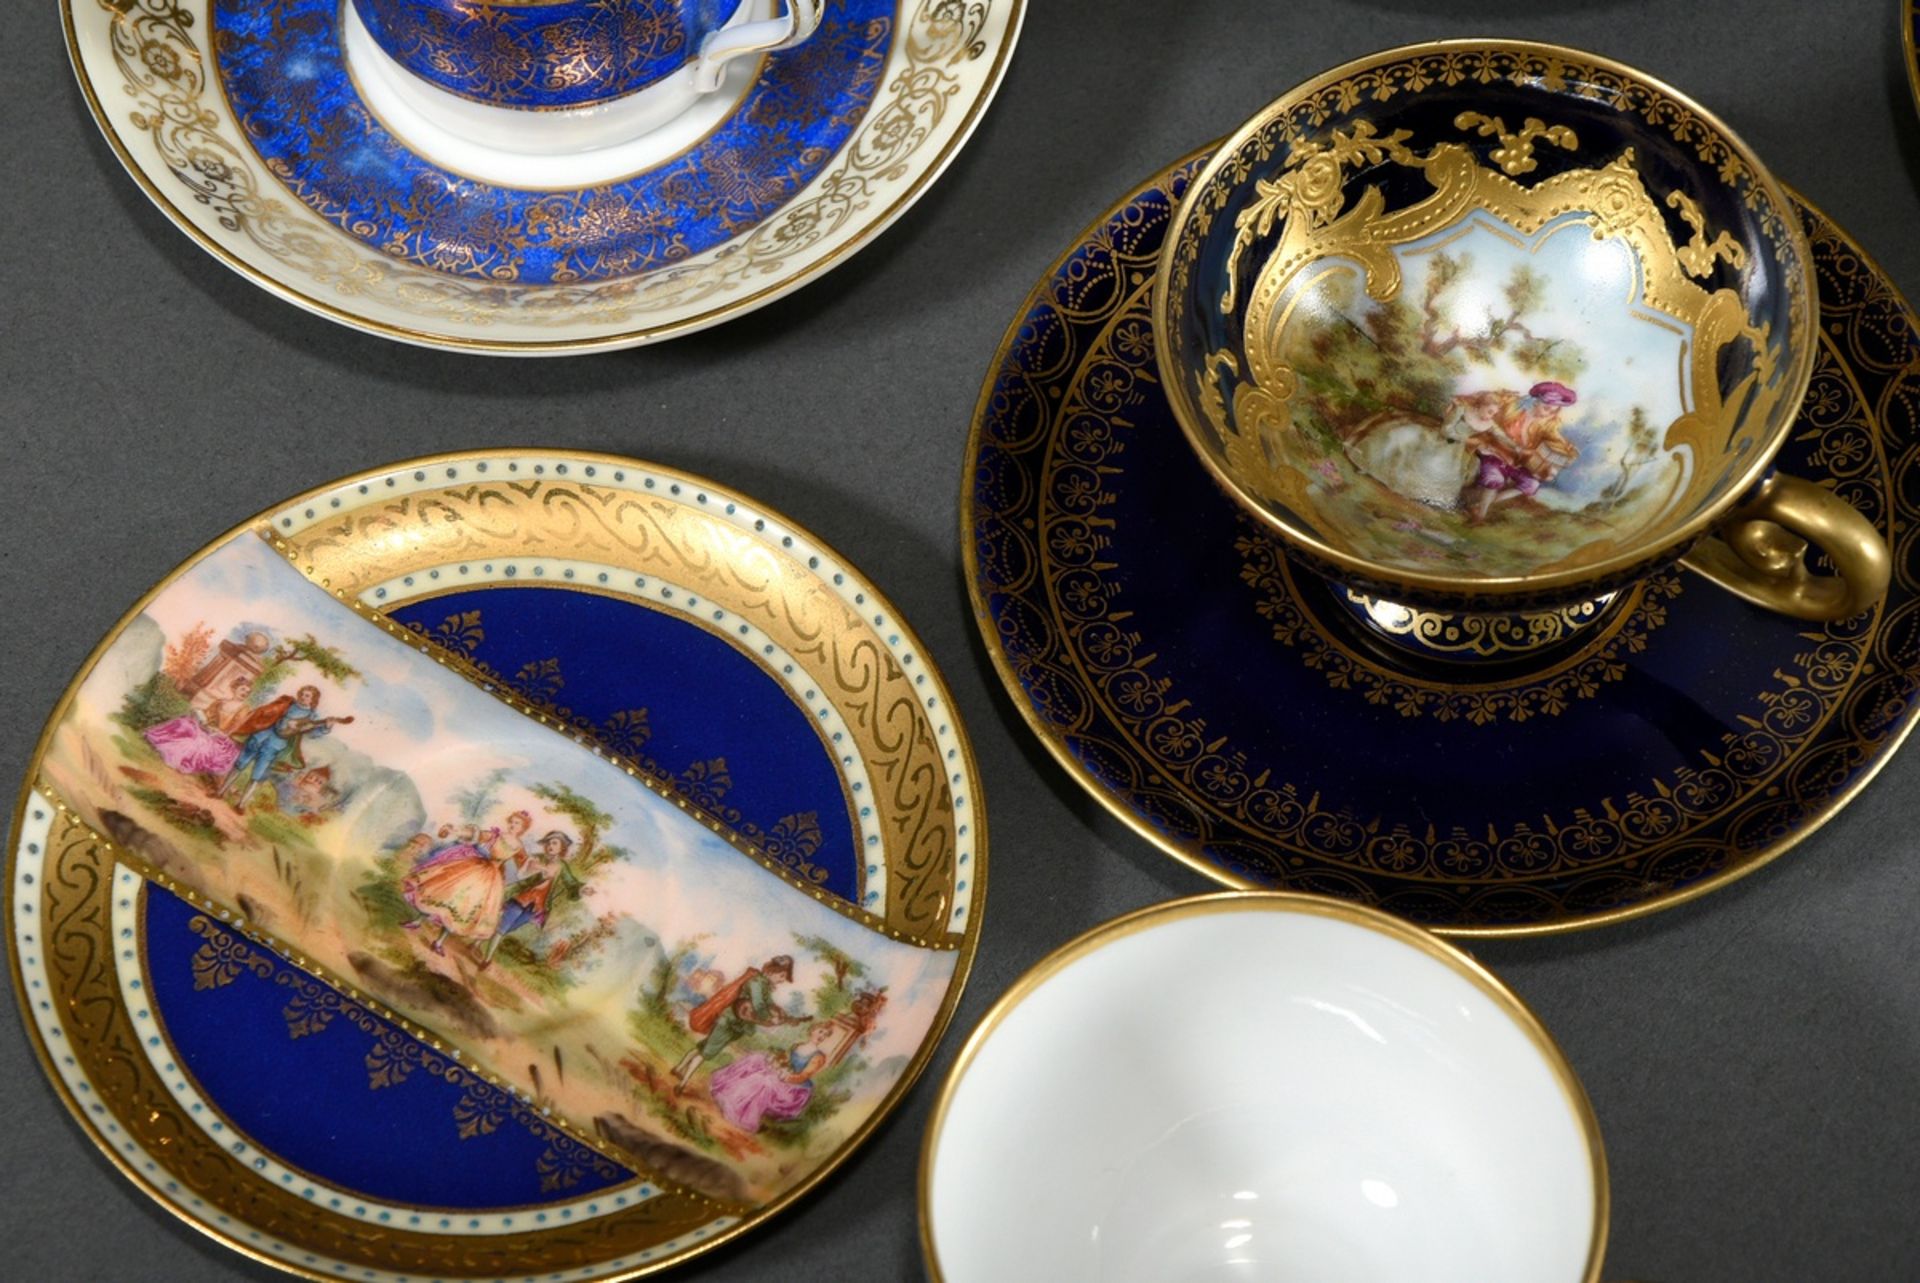 6 Diverse Mokkatassen/UT mit unterschiedlichen ornamentalen und floralen Golddekoren auf kobaltblau - Bild 4 aus 4